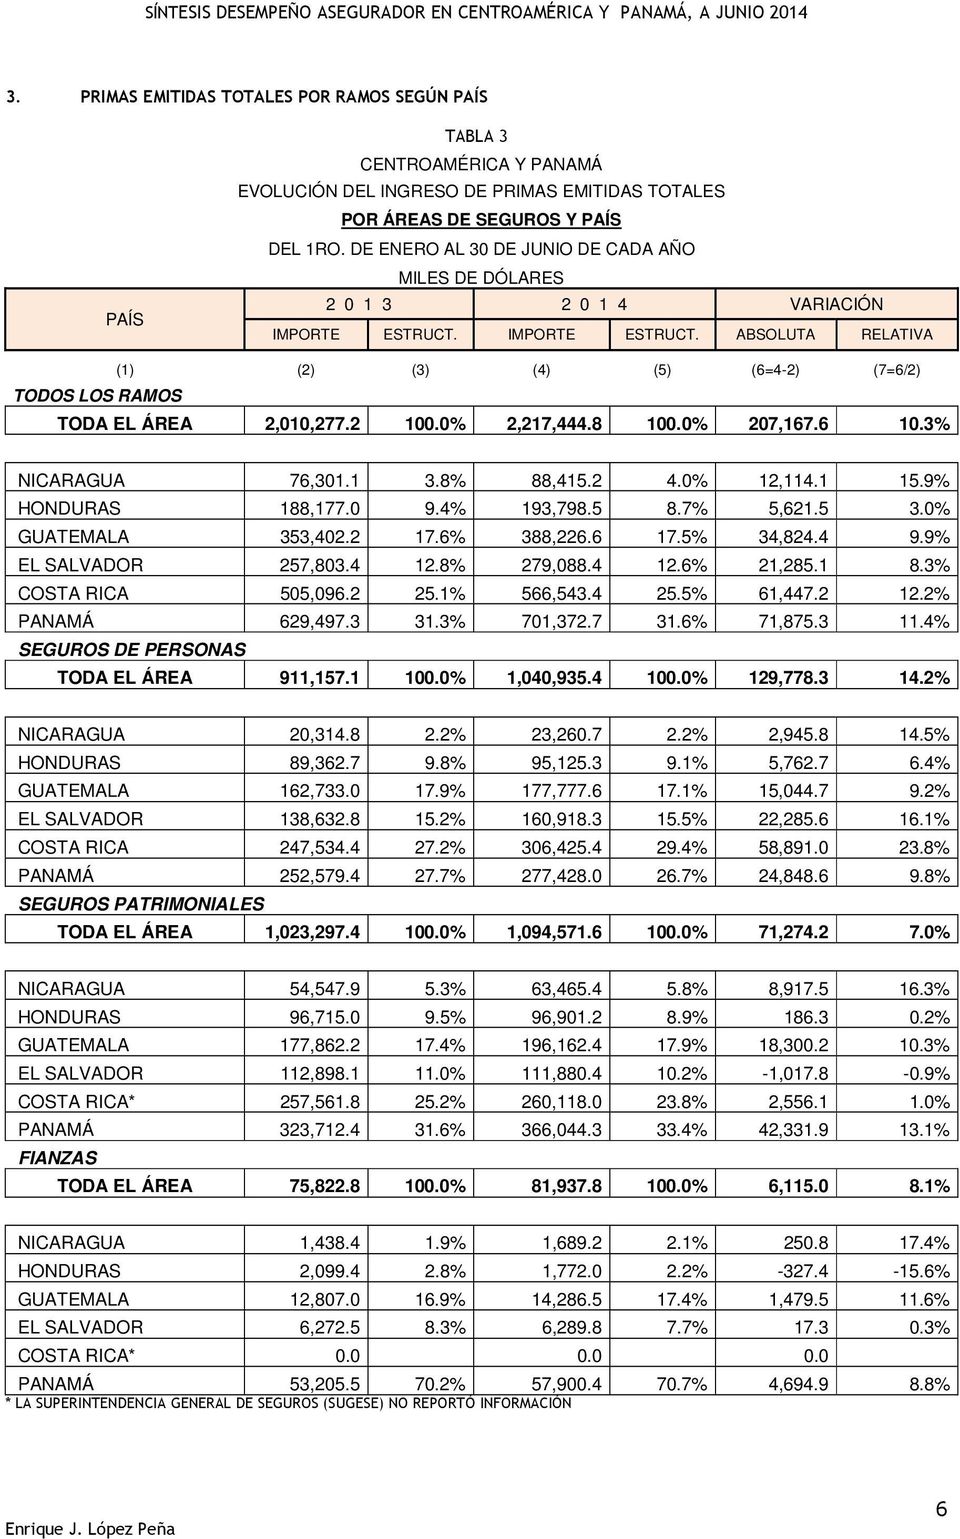 0% 12,114.1 15.9% HONDURAS 188,177.0 9.4% 193,798.5 8.7% 5,621.5 3.0% GUATEMALA 353,402.2 17.6% 388,226.6 17.5% 34,824.4 9.9% EL SALVADOR 257,803.4 12.8% 279,088.4 12.6% 21,285.1 8.